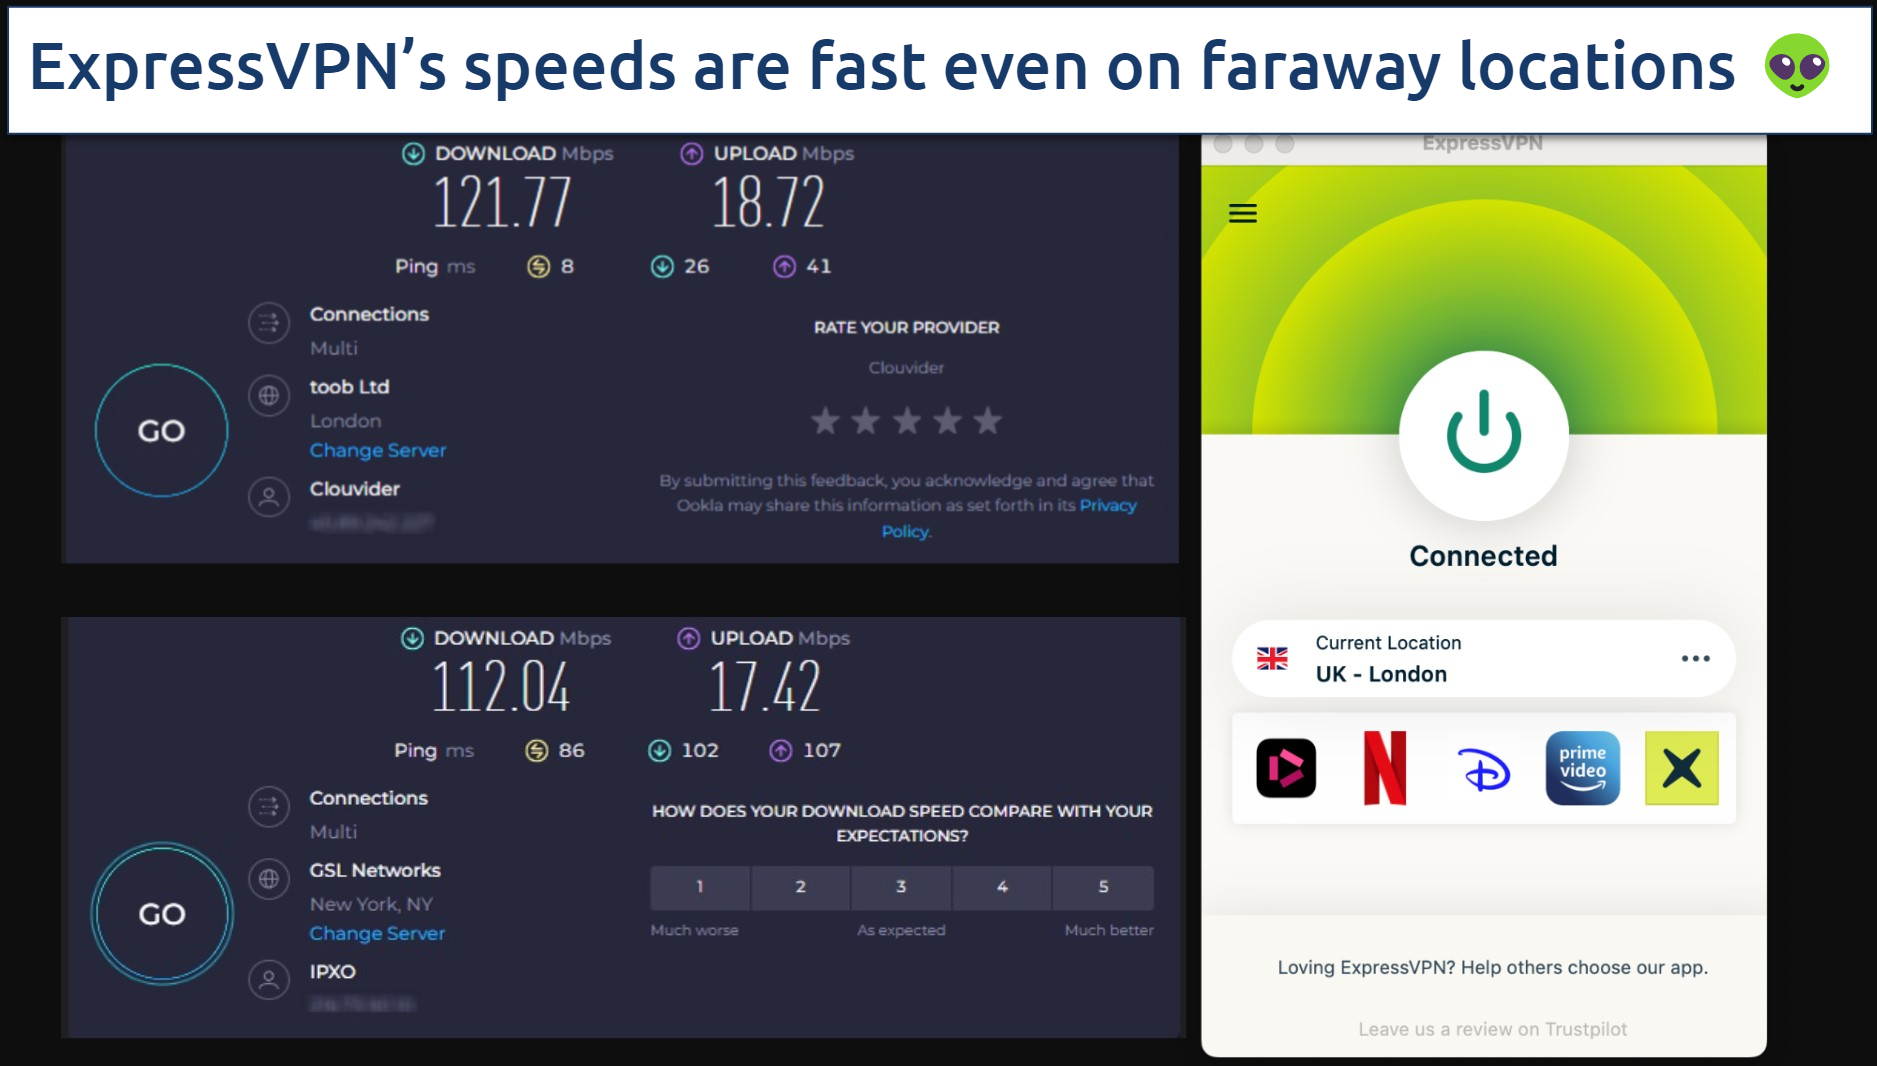 Screenshot of the ExpressVPN app over an online speed test tool